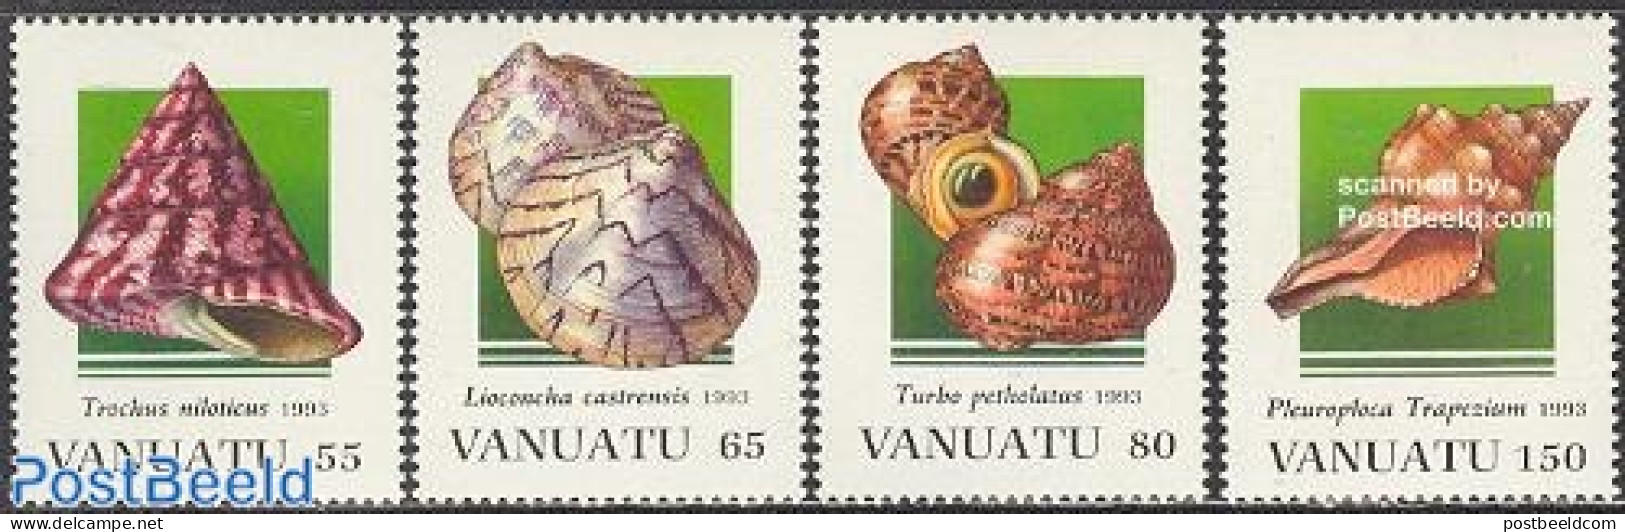 Vanuatu 1993 Shells 4v, Mint NH, Nature - Shells & Crustaceans - Marine Life